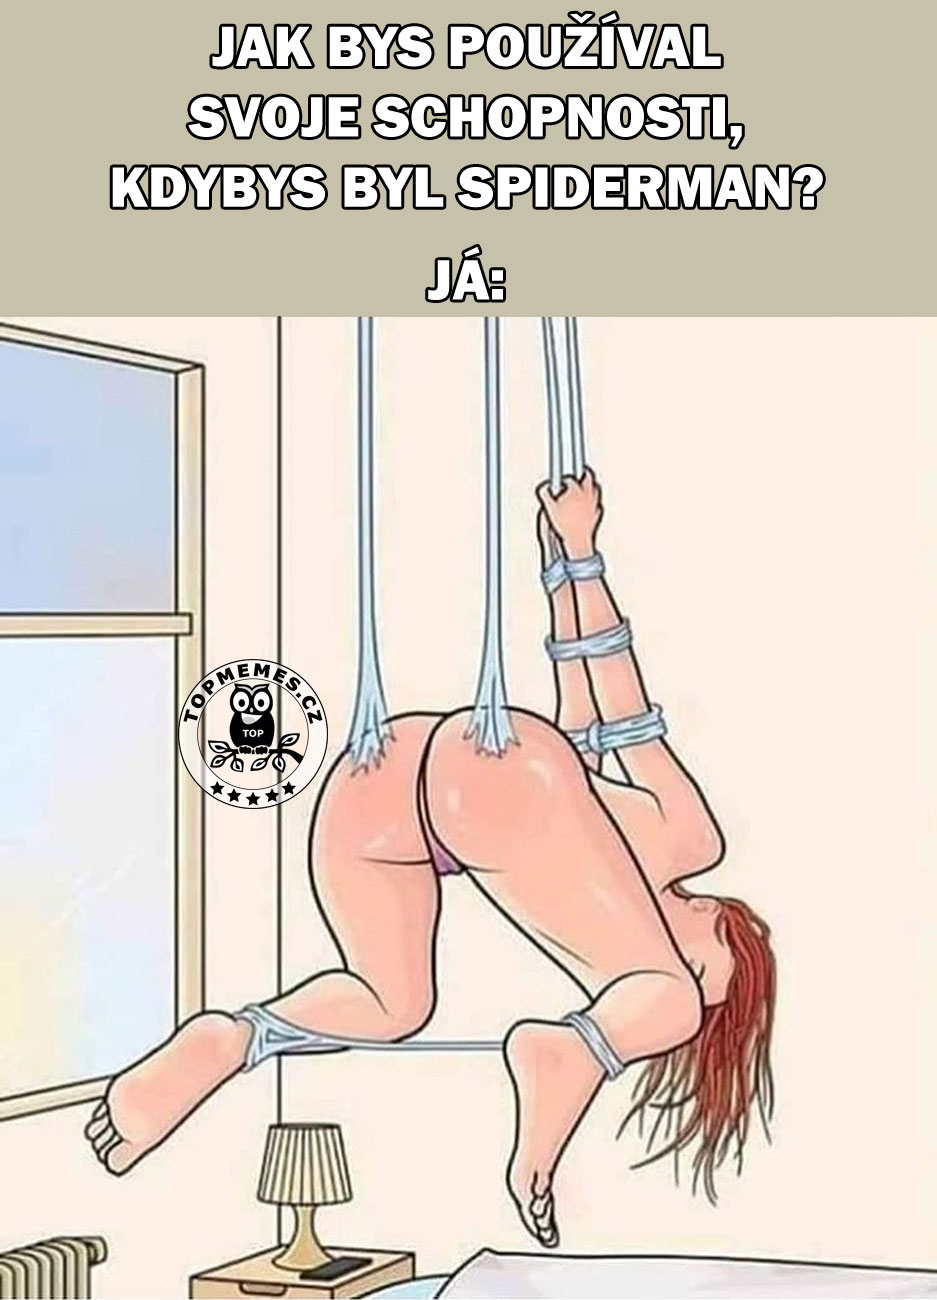 Jak bys používal svoje schopnosti, kdybys byl Spiderman?
Já: